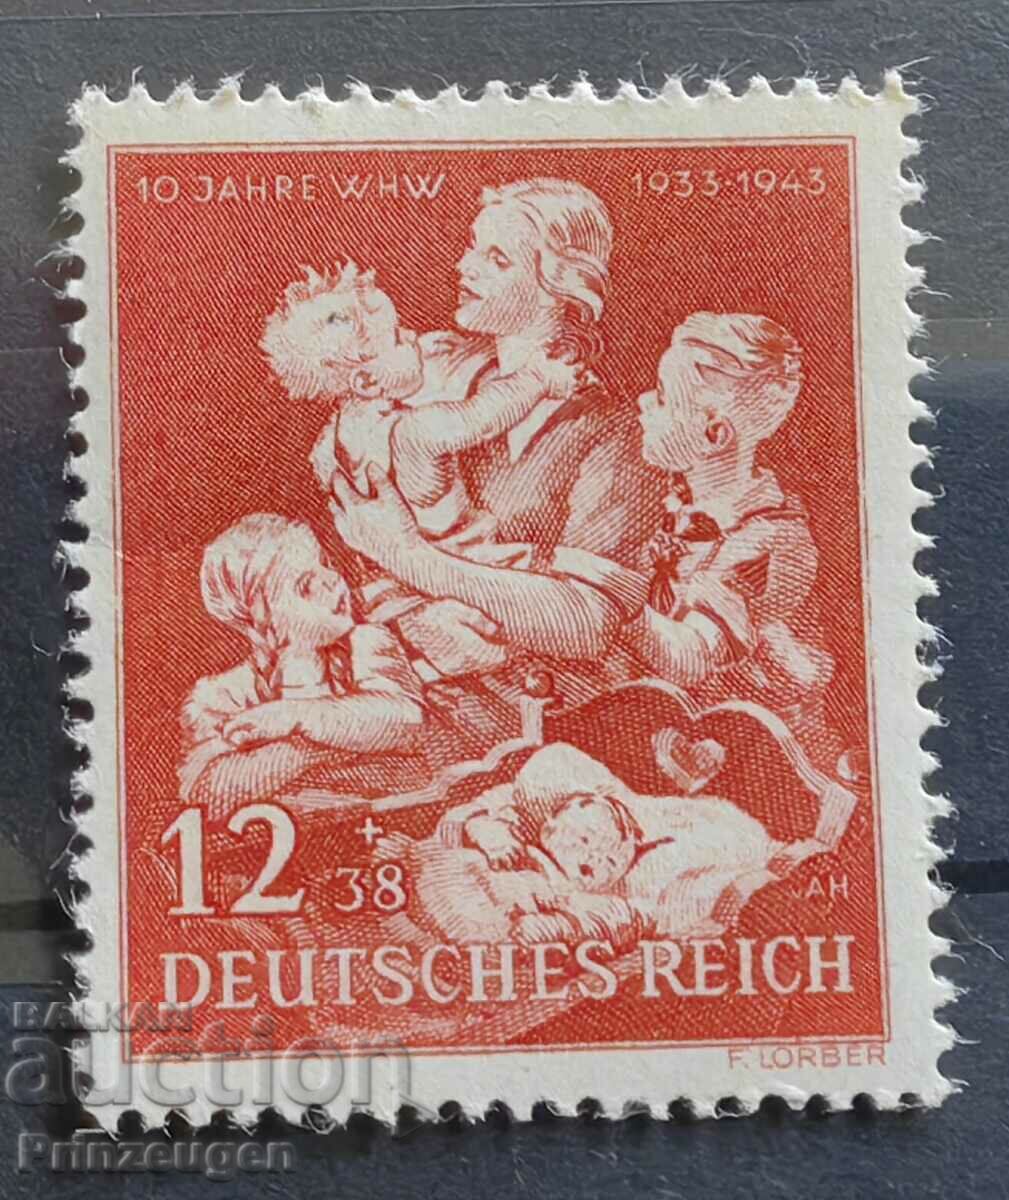 Germania - Al Treilea Reich - 1943 - serie completa